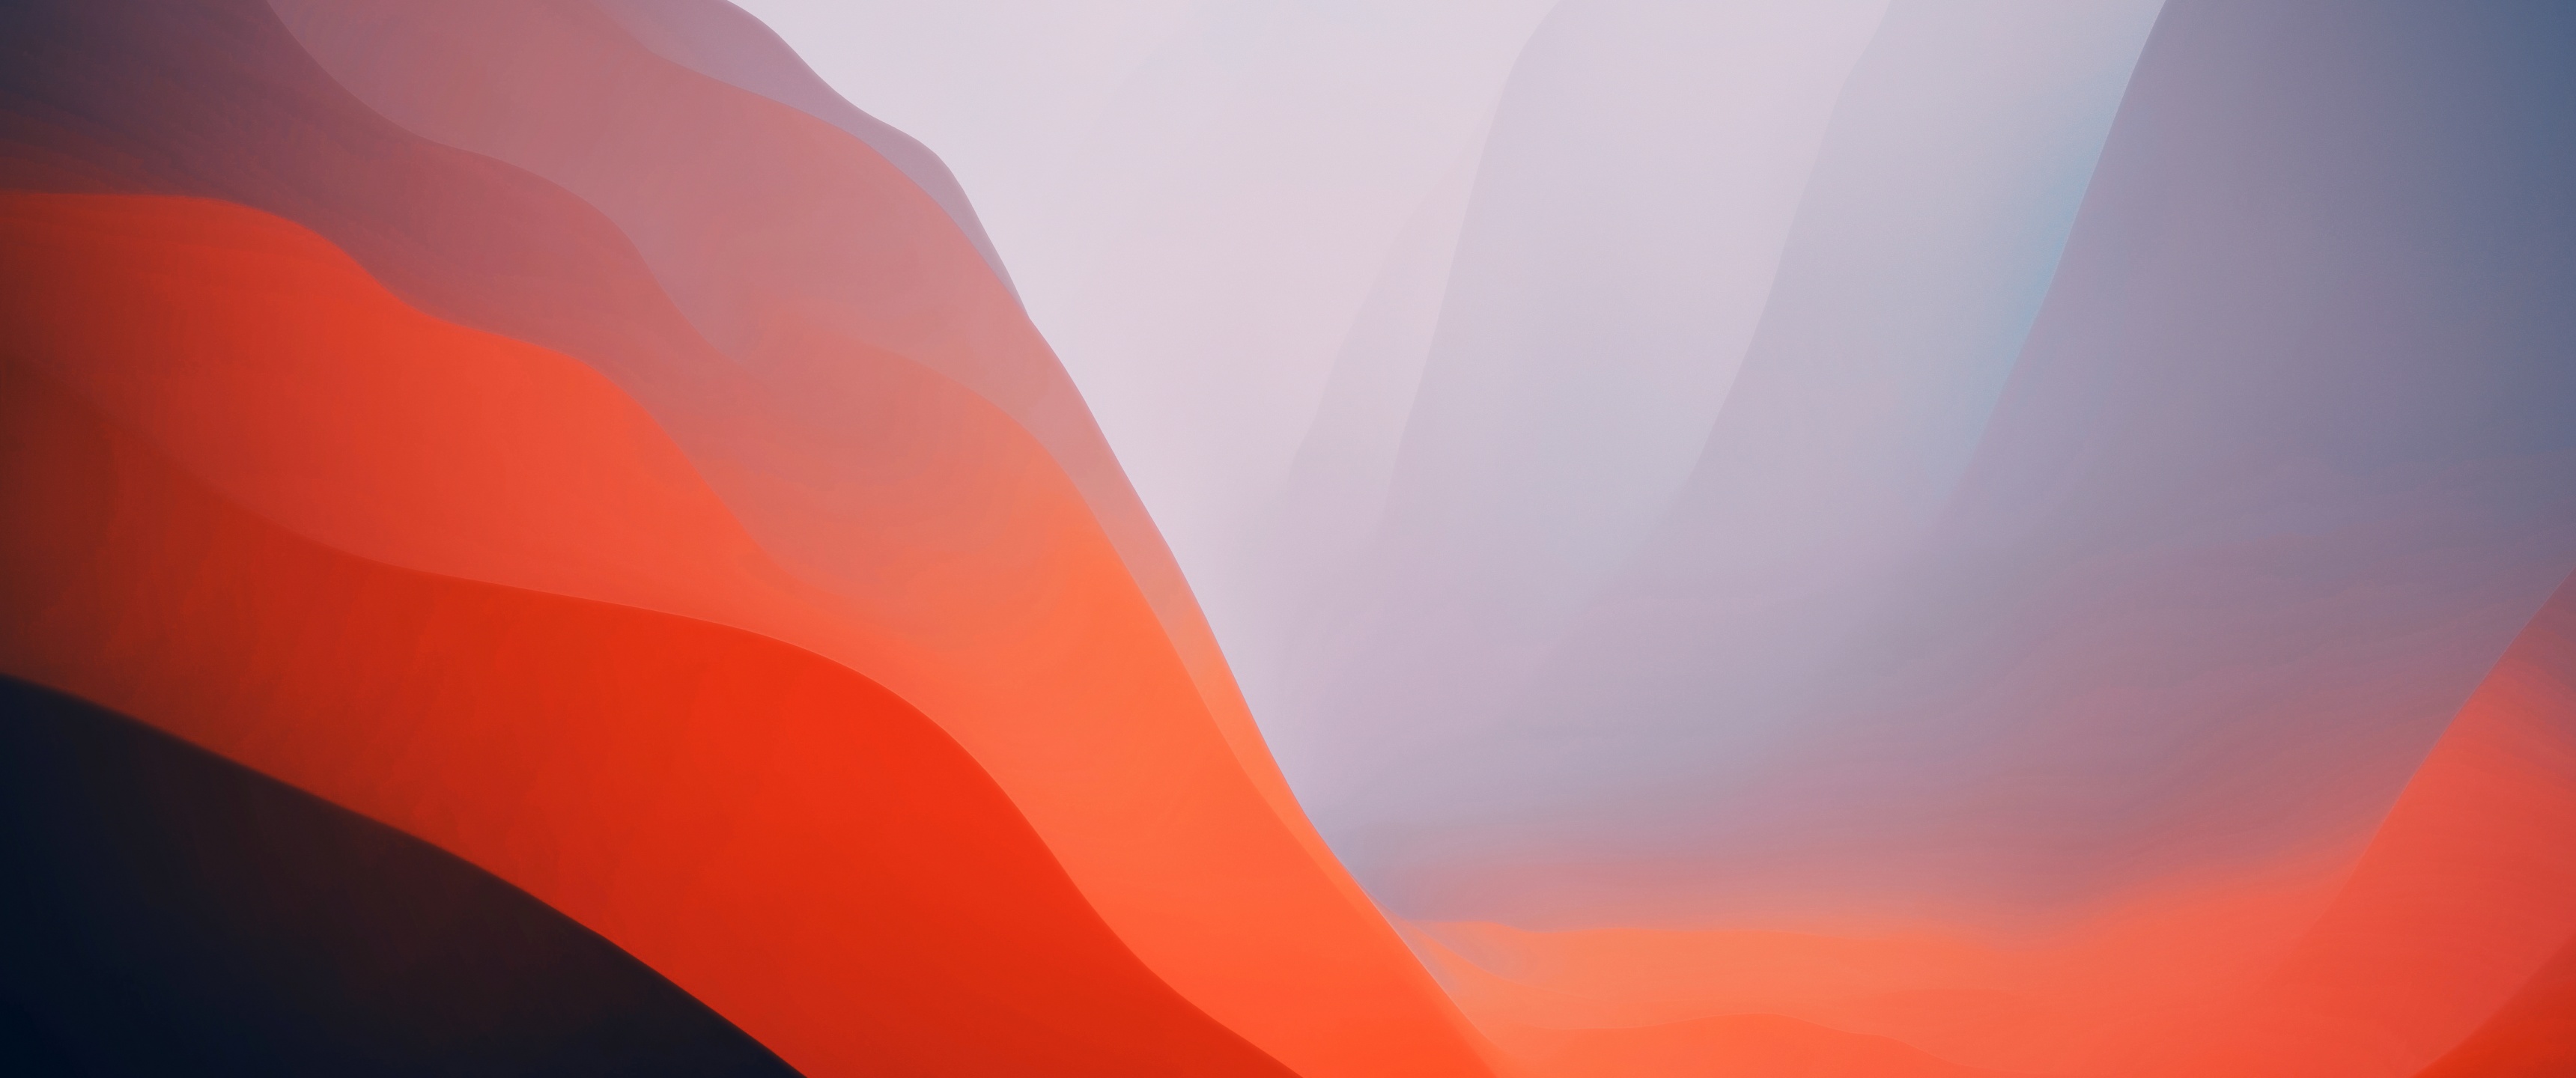 Hãy đón xem Hình nền MacOS Monterey tuyệt đẹp để cập nhật trang trí màn hình mới nhất của bạn. Bộ ảnh này đem lại cảm giác tươi mới, tràn đầy sức sống và giúp nở rộ sự sáng tạo của bạn!